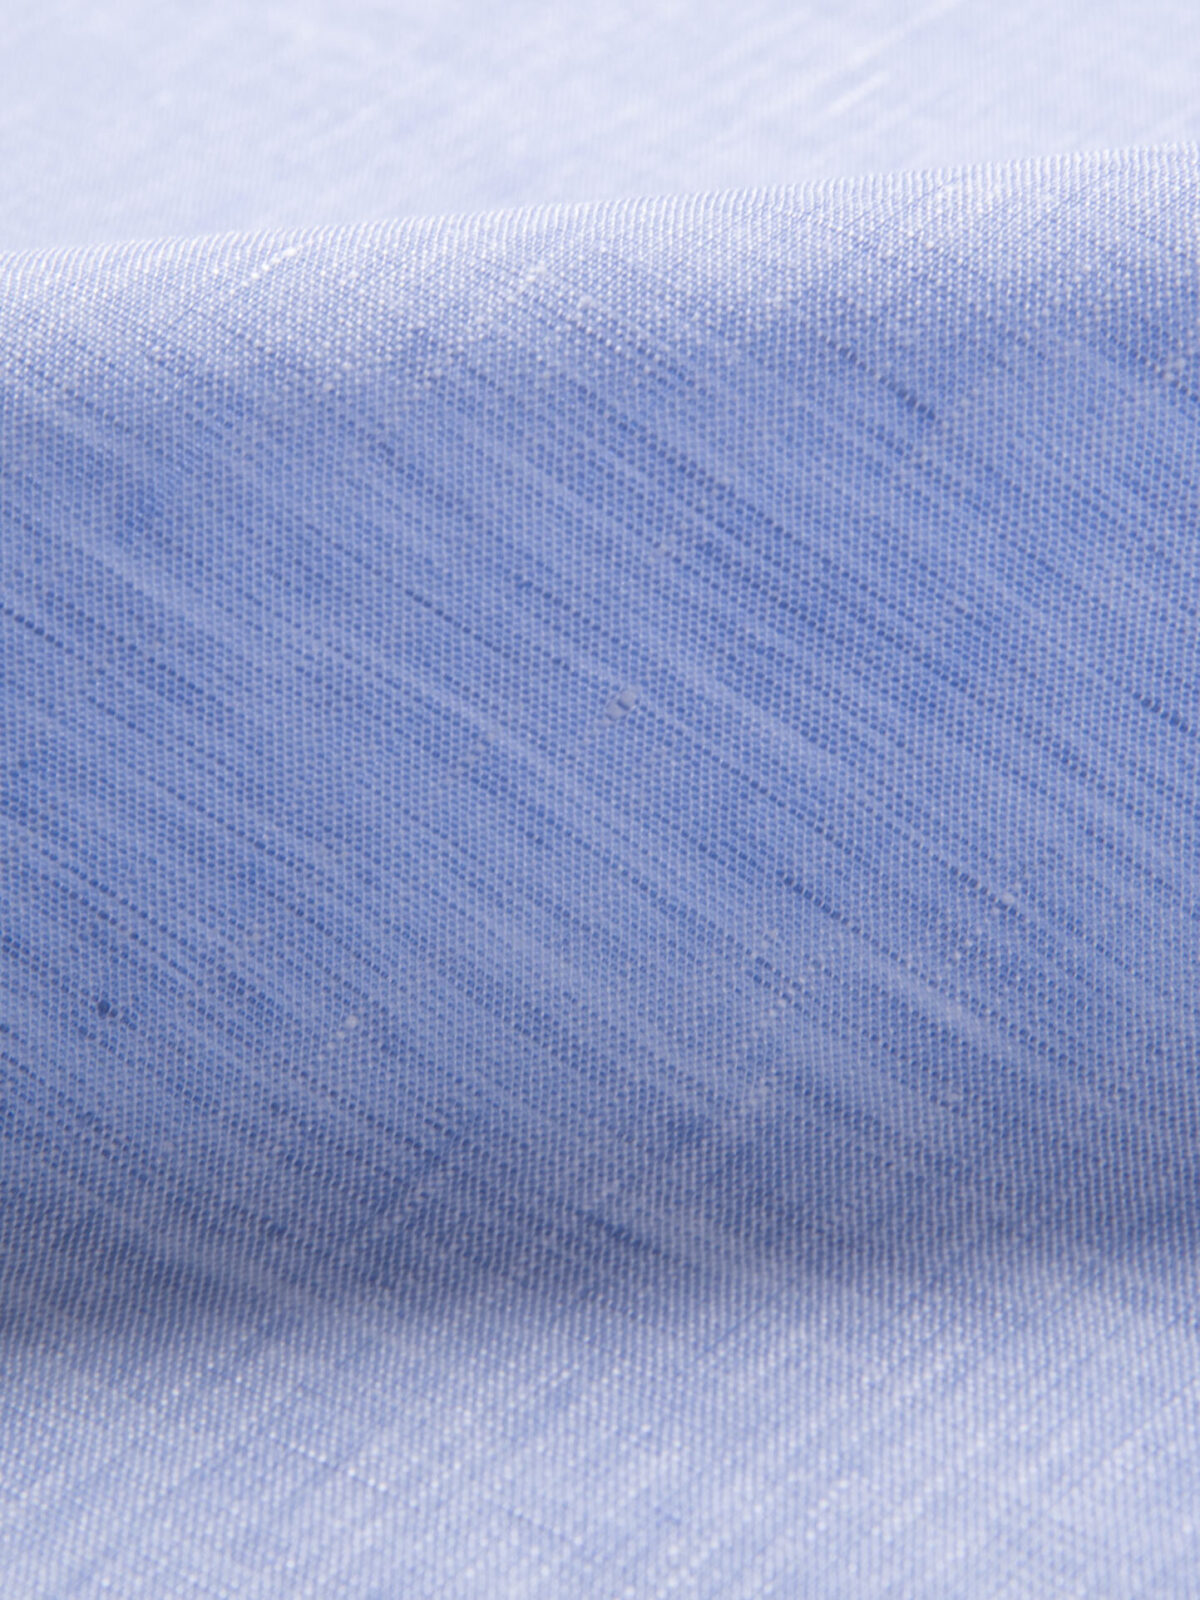 Grandi and Rubinelli Washed Light Blue Lightweight Linen Shirts by ...